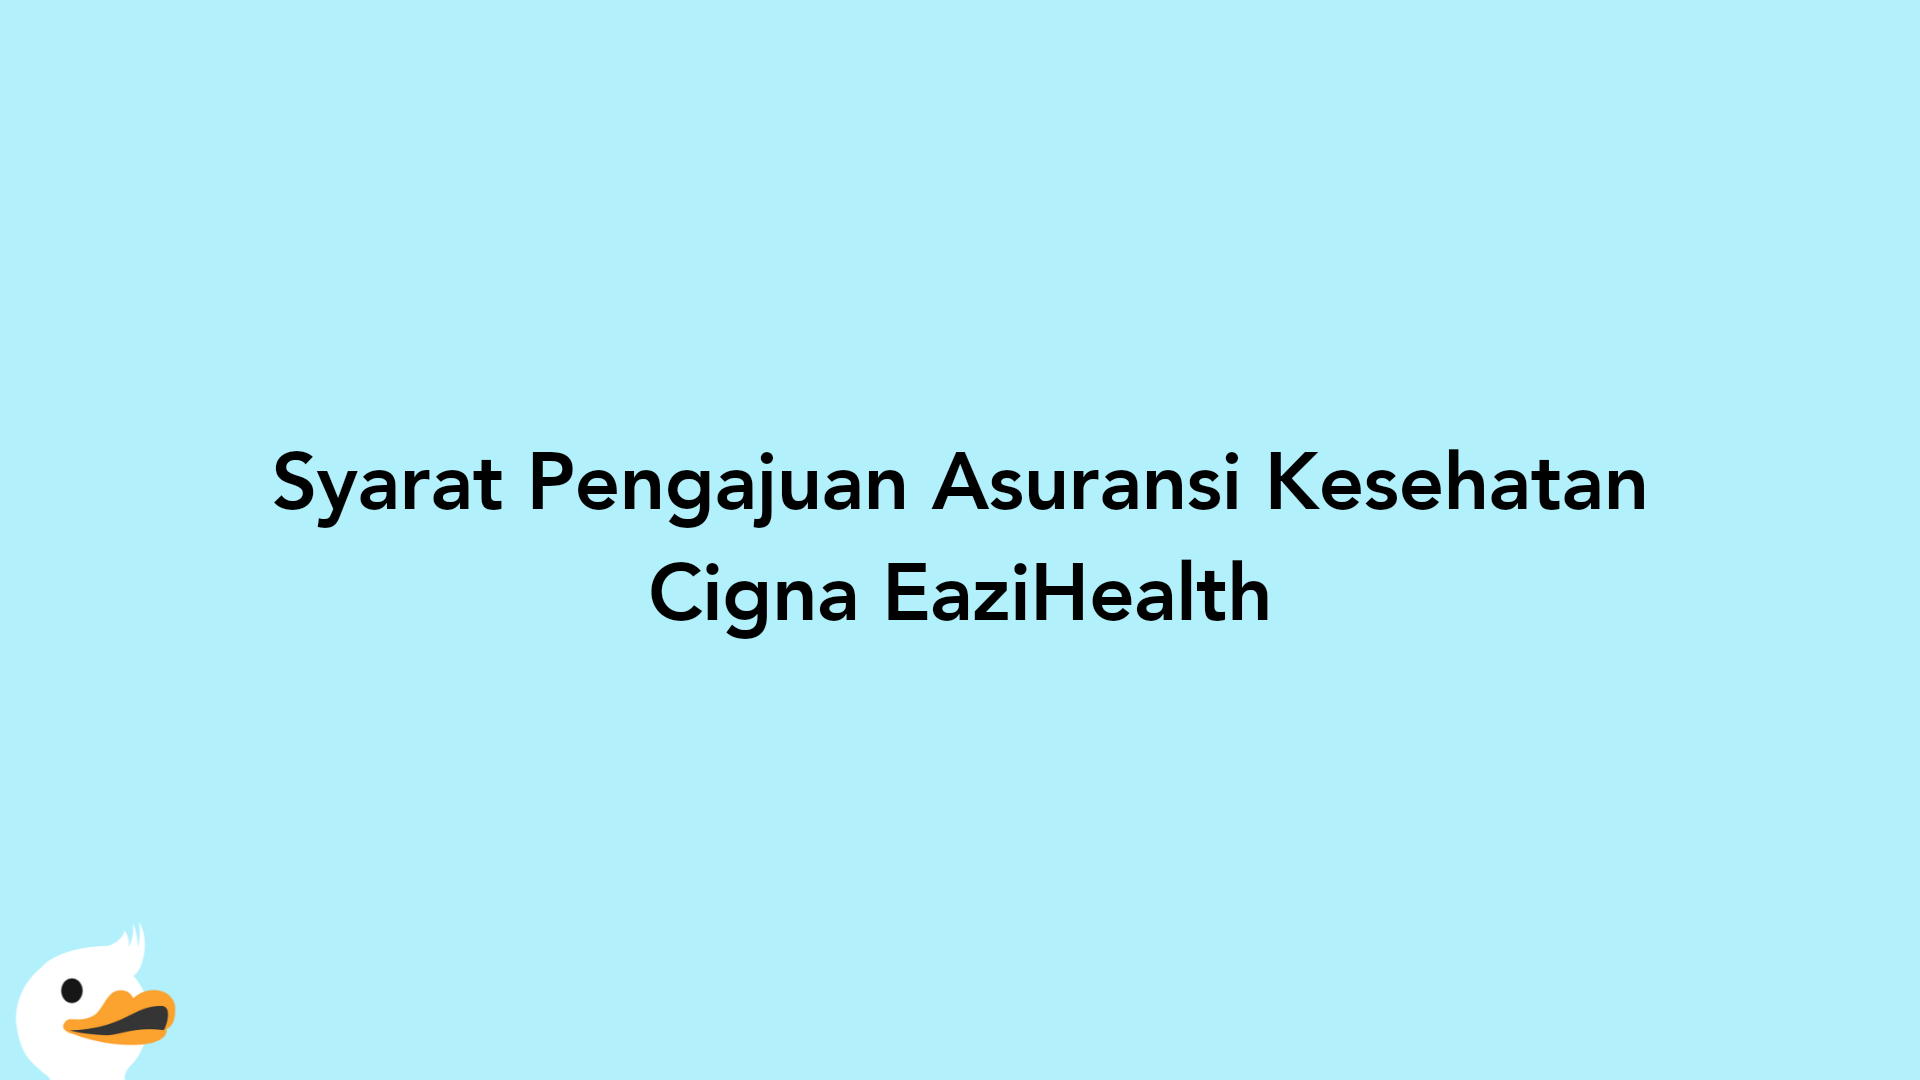 Syarat Pengajuan Asuransi Kesehatan Cigna EaziHealth